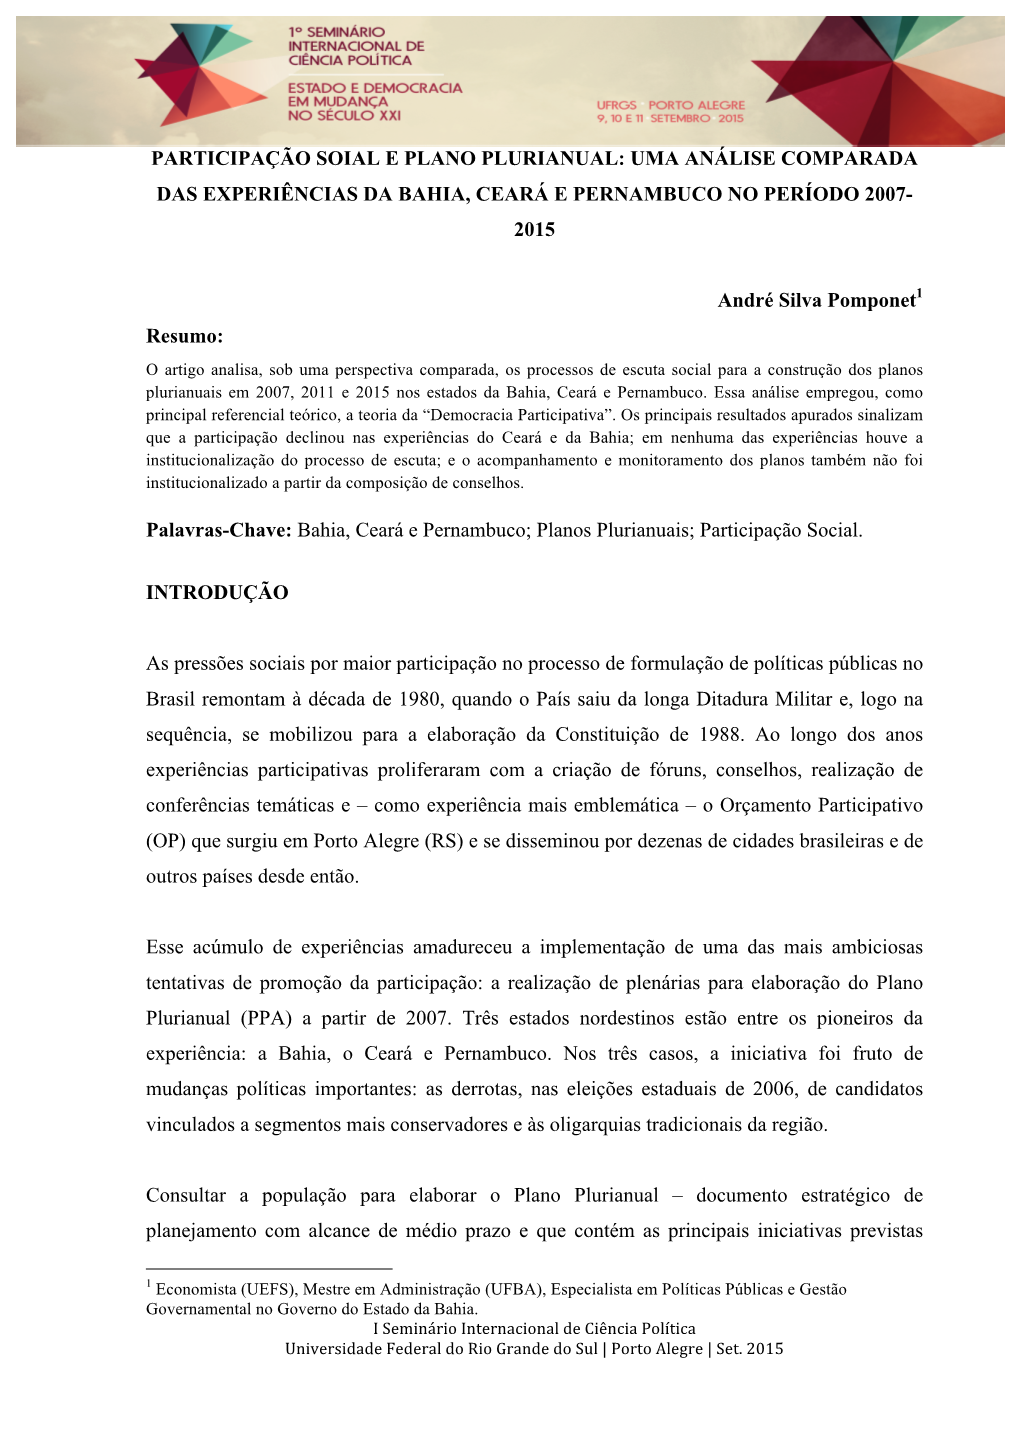 Participação Soial E Plano Plurianual: Uma Análise Comparada Das Experiências Da Bahia, Ceará E Pernambuco No Período 2007- 2015